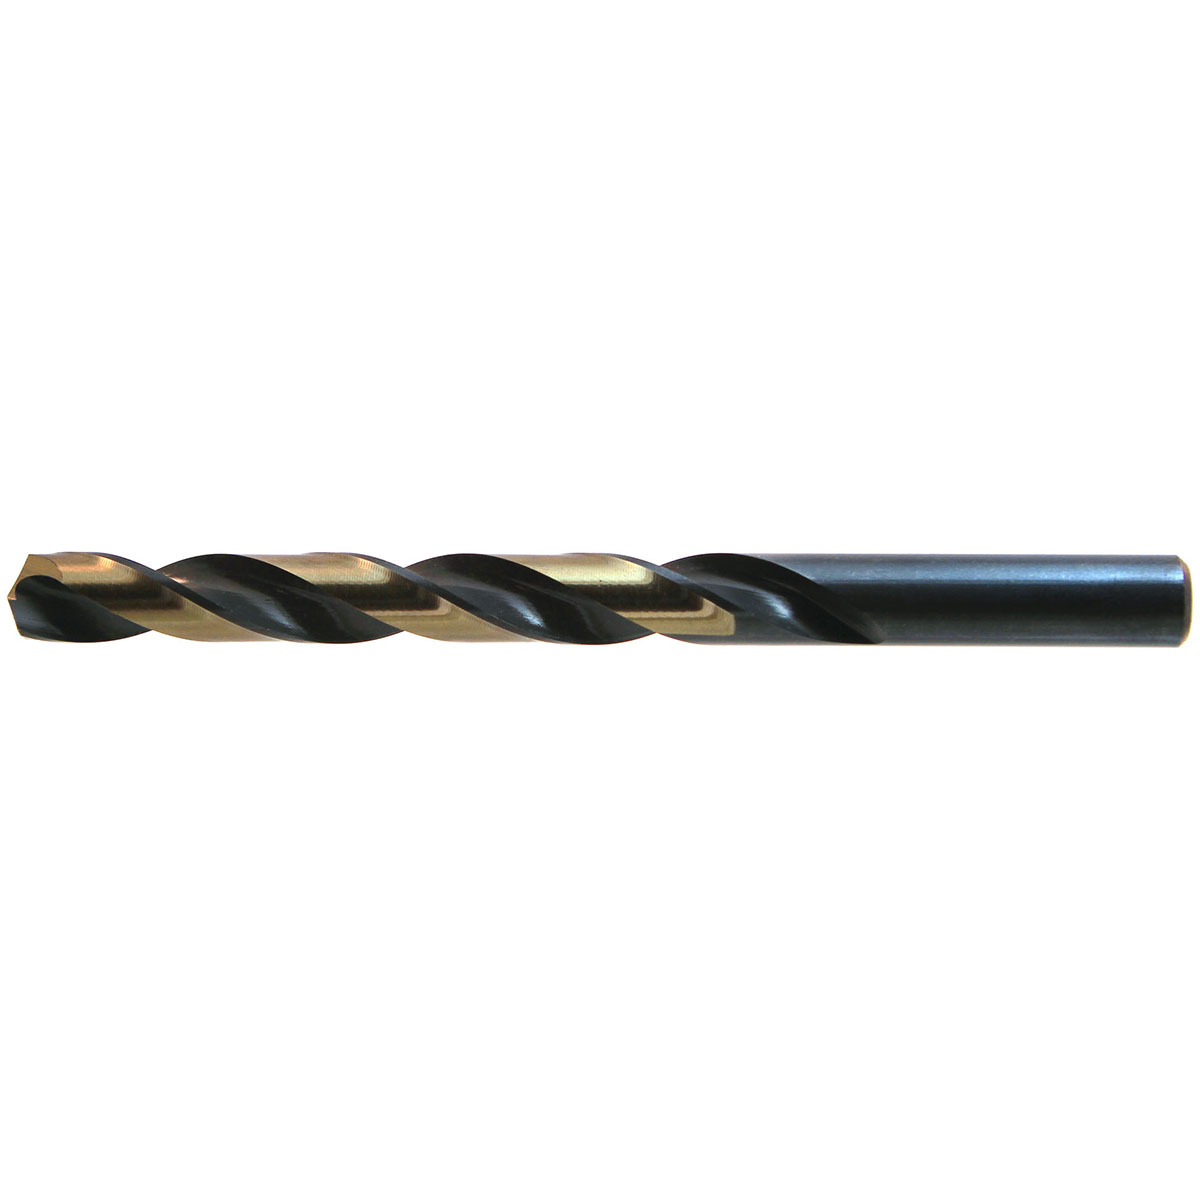 13//64/" Black /& Gold Drill Bits 135° Split Point Jobber Length Heavy Duty 12 Pack